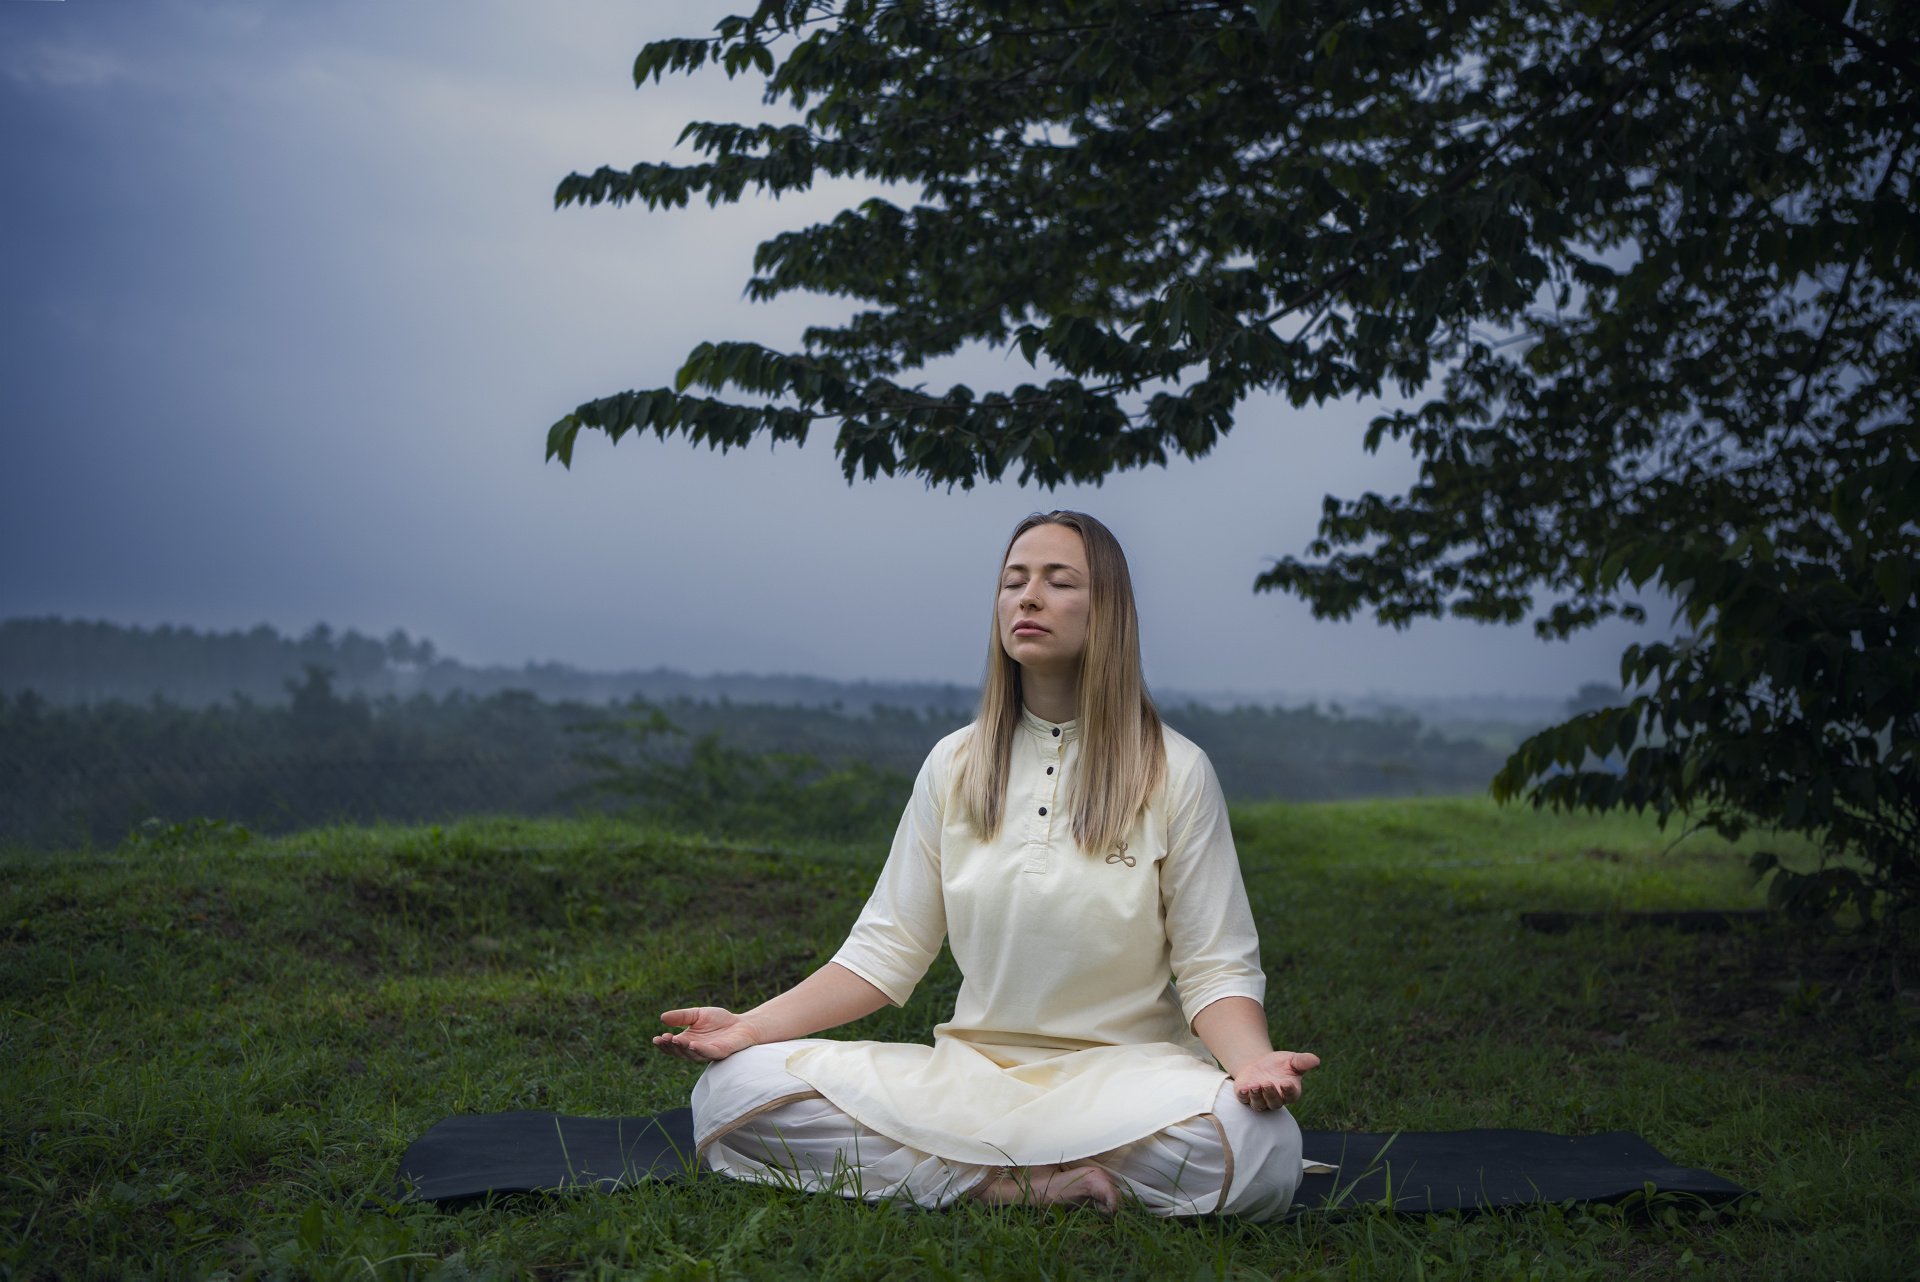 Yogasanas - balance of mind and body